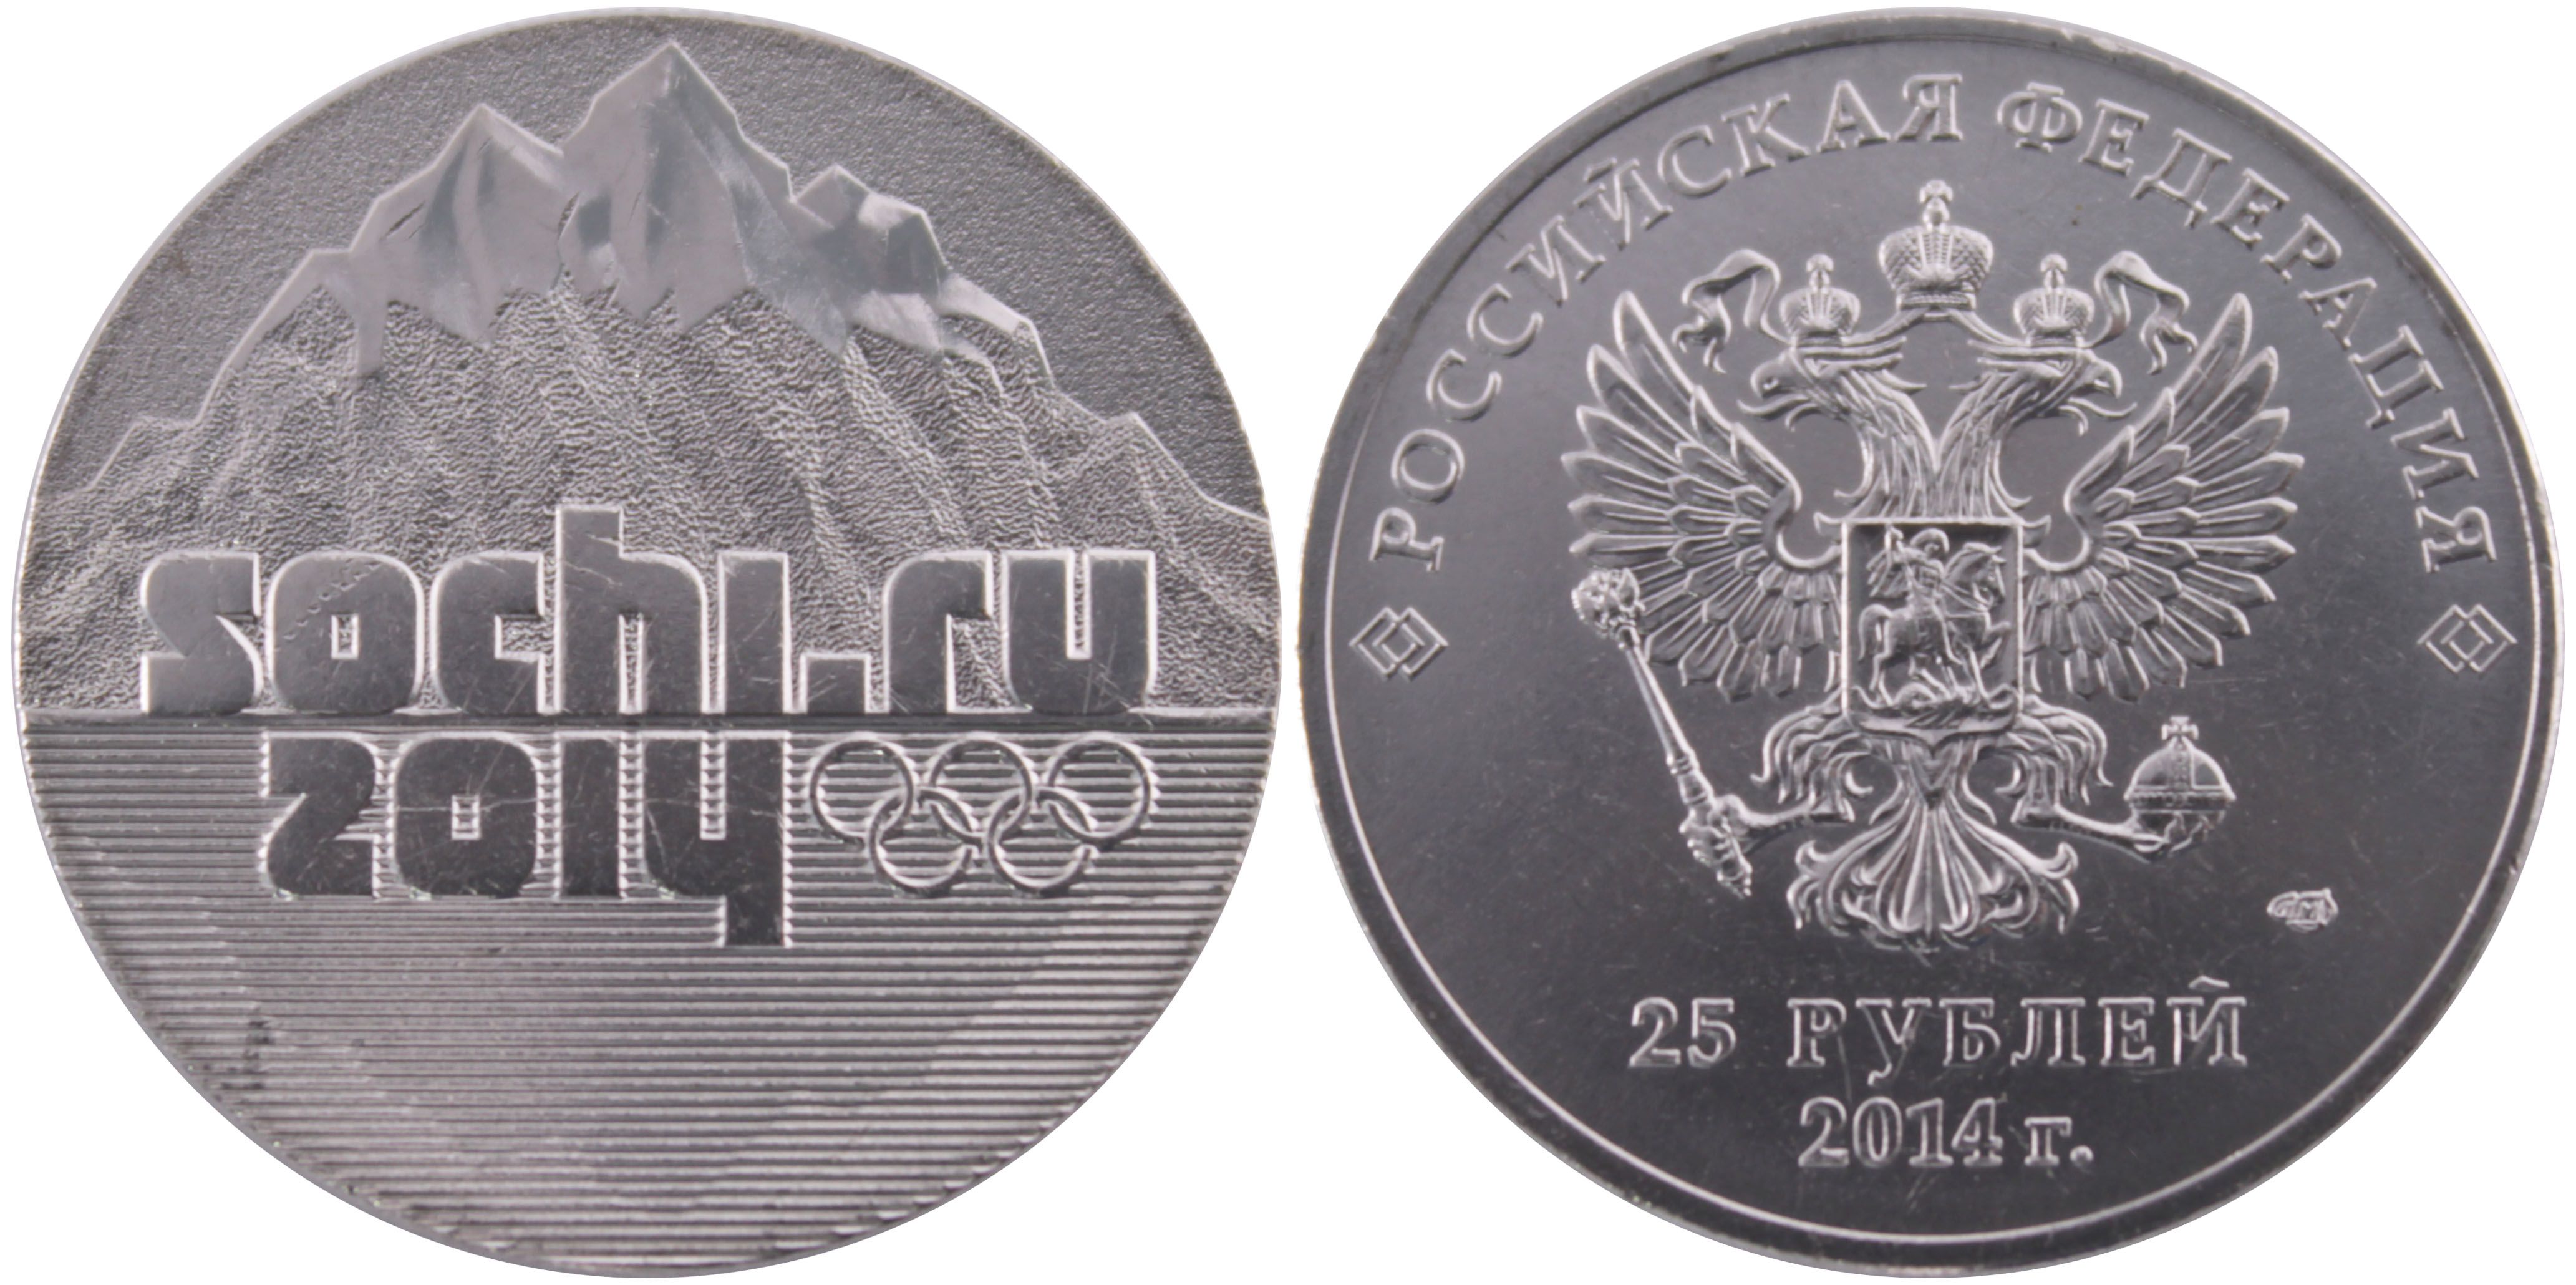 Эмблема Олимпийских игр 2014 монета